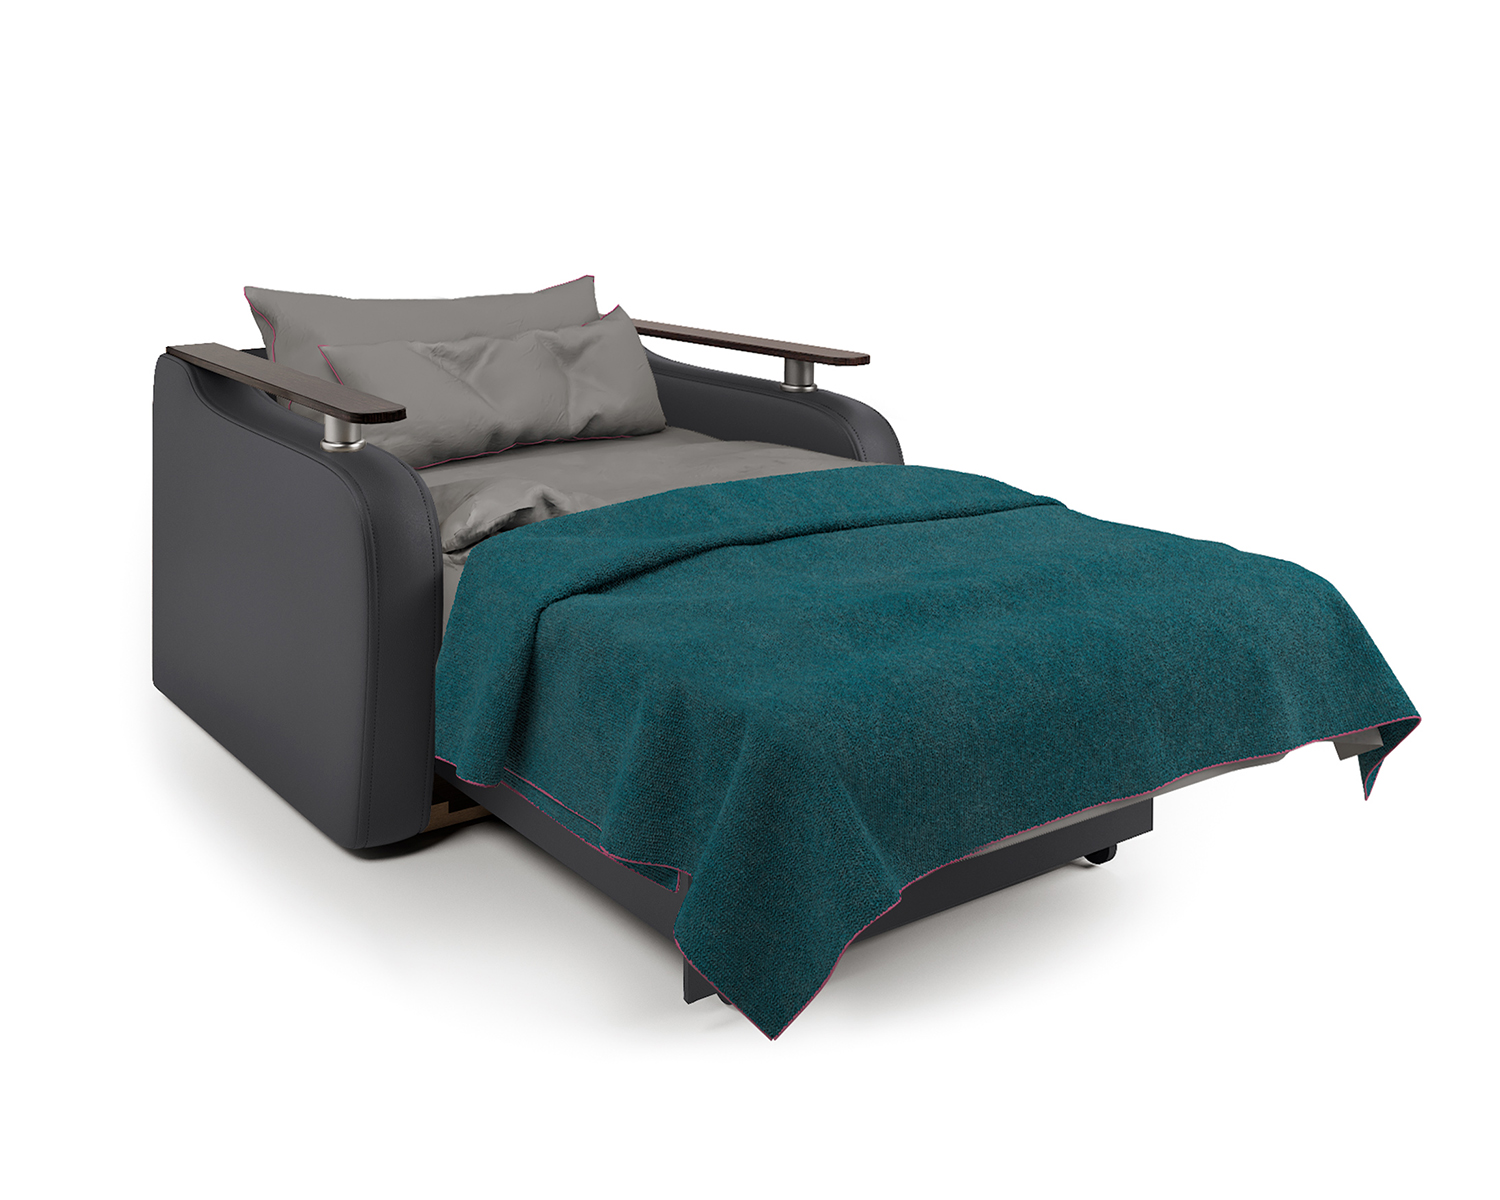 Кресло-кровать Шарм-Дизайн Гранд Д 33070742, экокожа черная и серый шенилл/бук